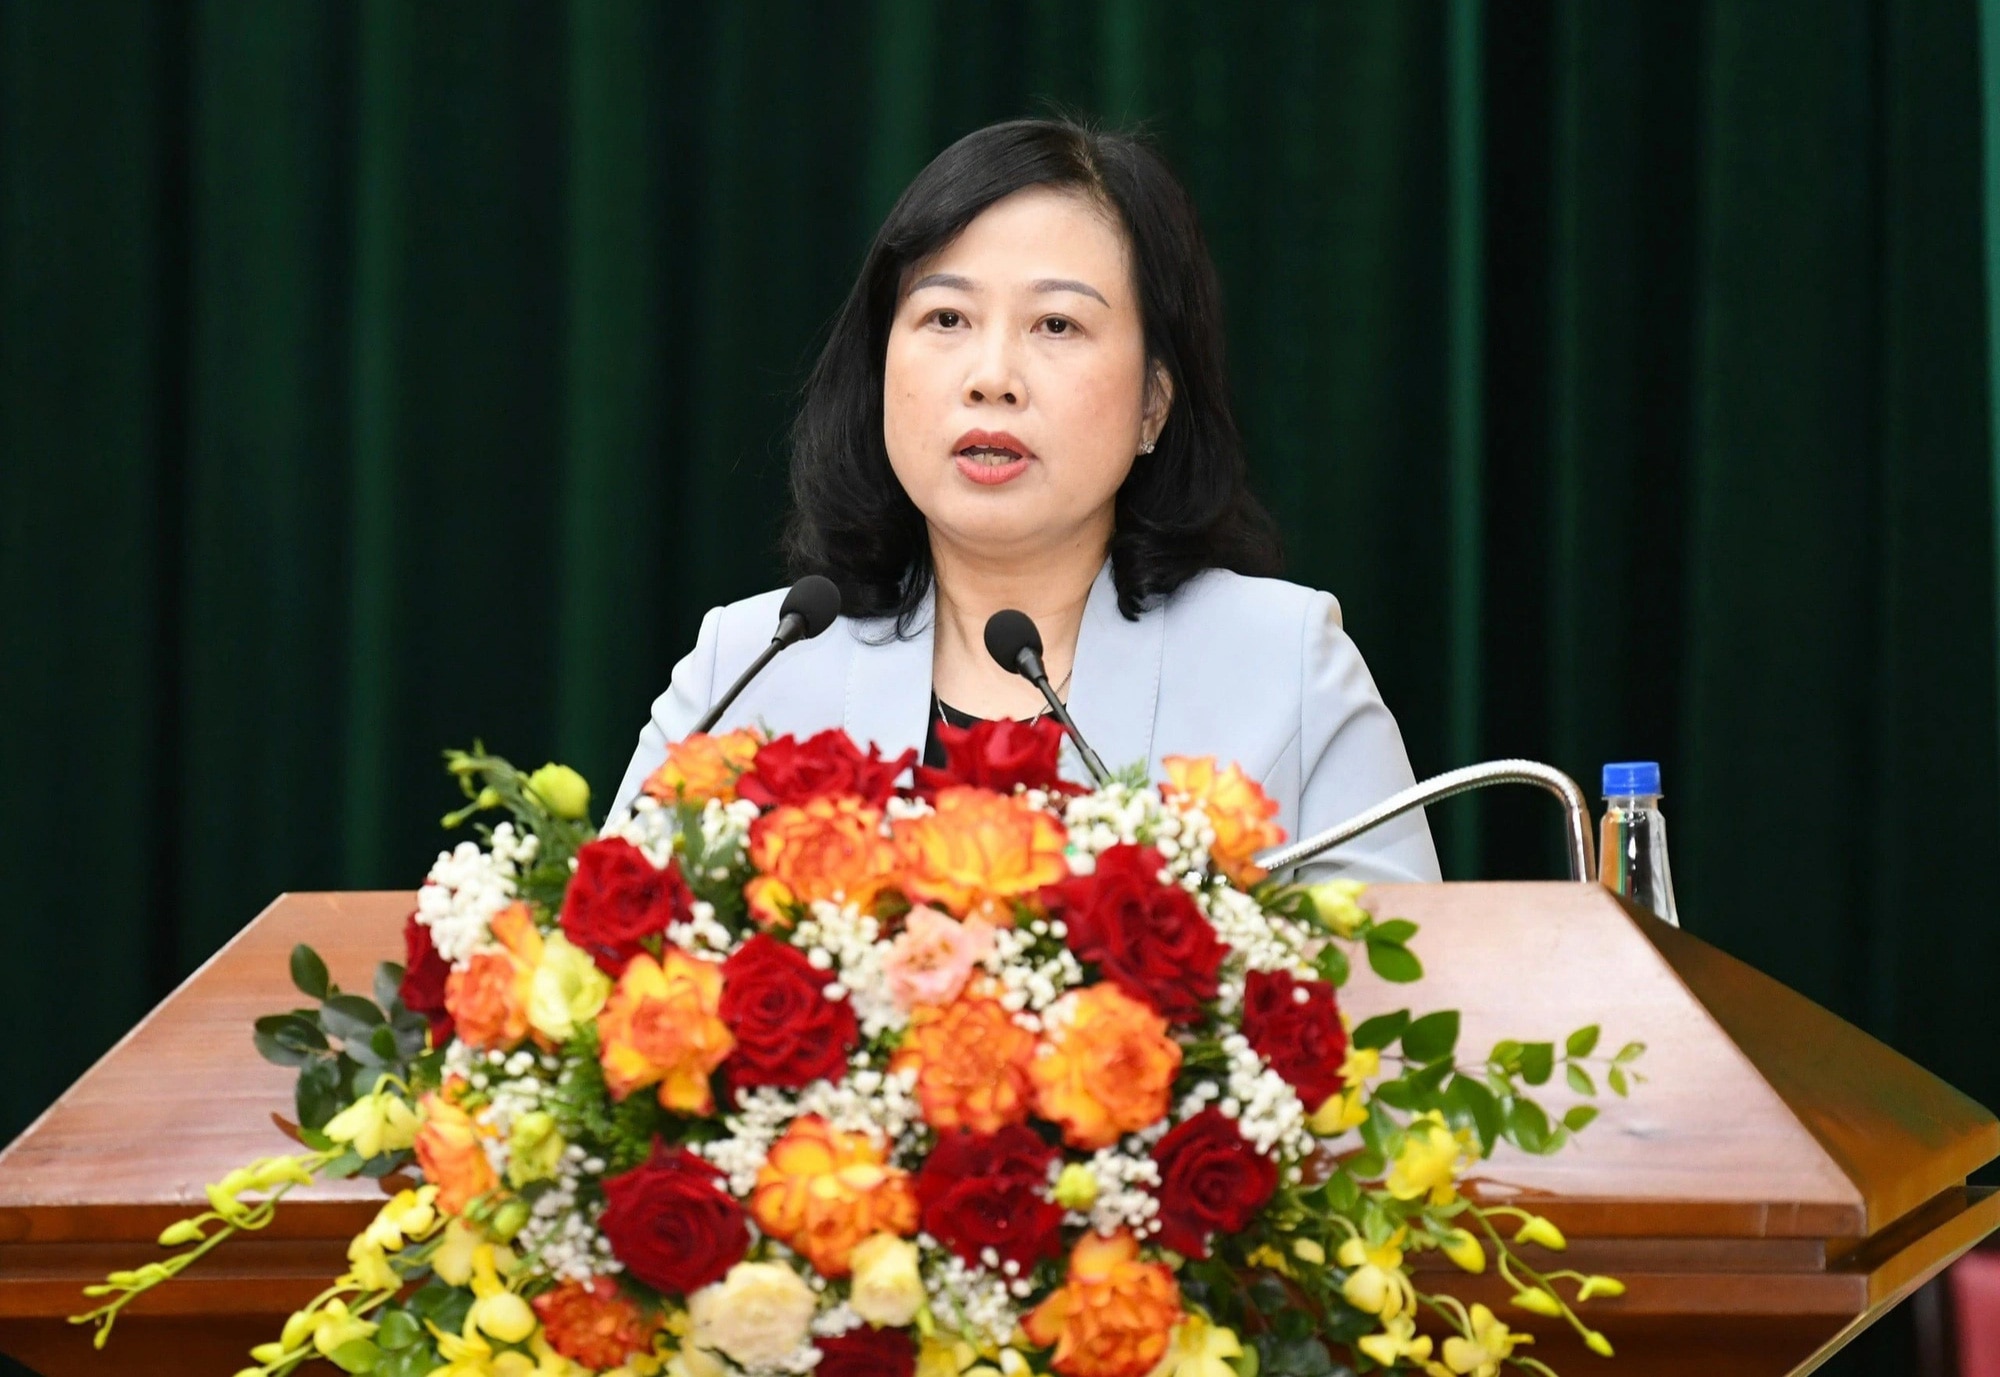 Bà Đào Hồng Lan, bộ trưởng Bộ Y tế, phát biểu tại cuộc họp cung cấp thông tin y tế quý 2 chiều 17-6 tại Hà Nội - Ảnh: TC